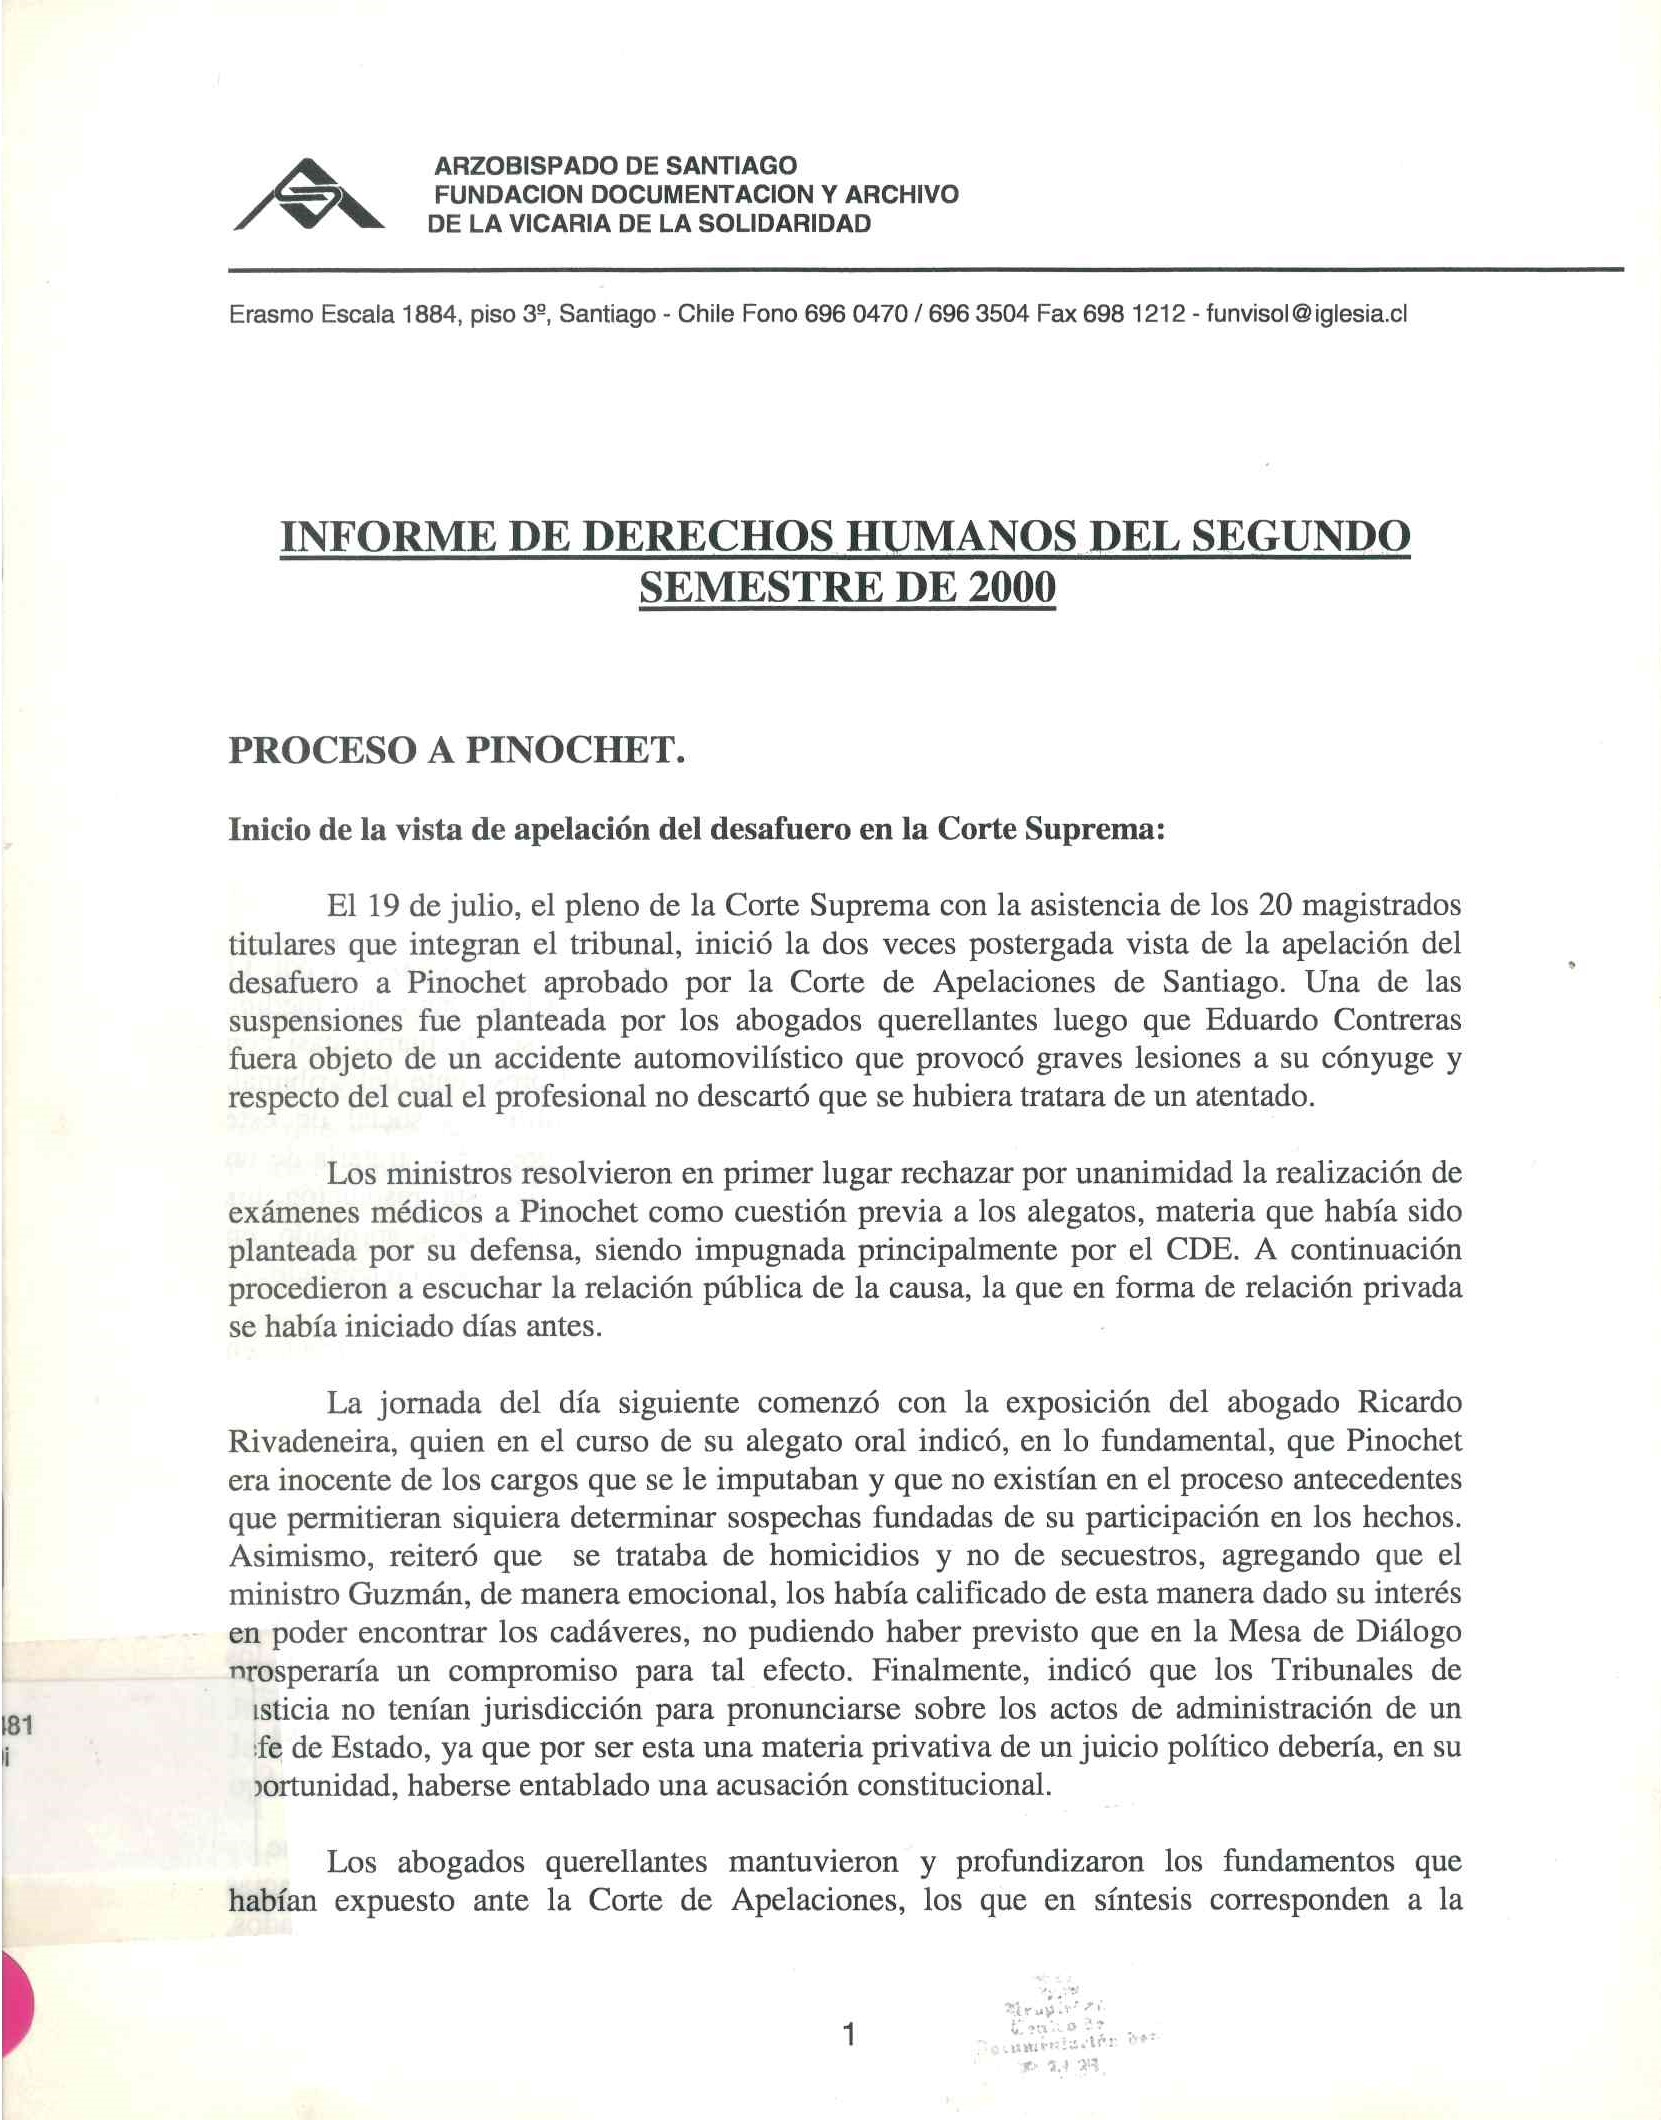 Informe de derechos humanos del segundo semestre 2000